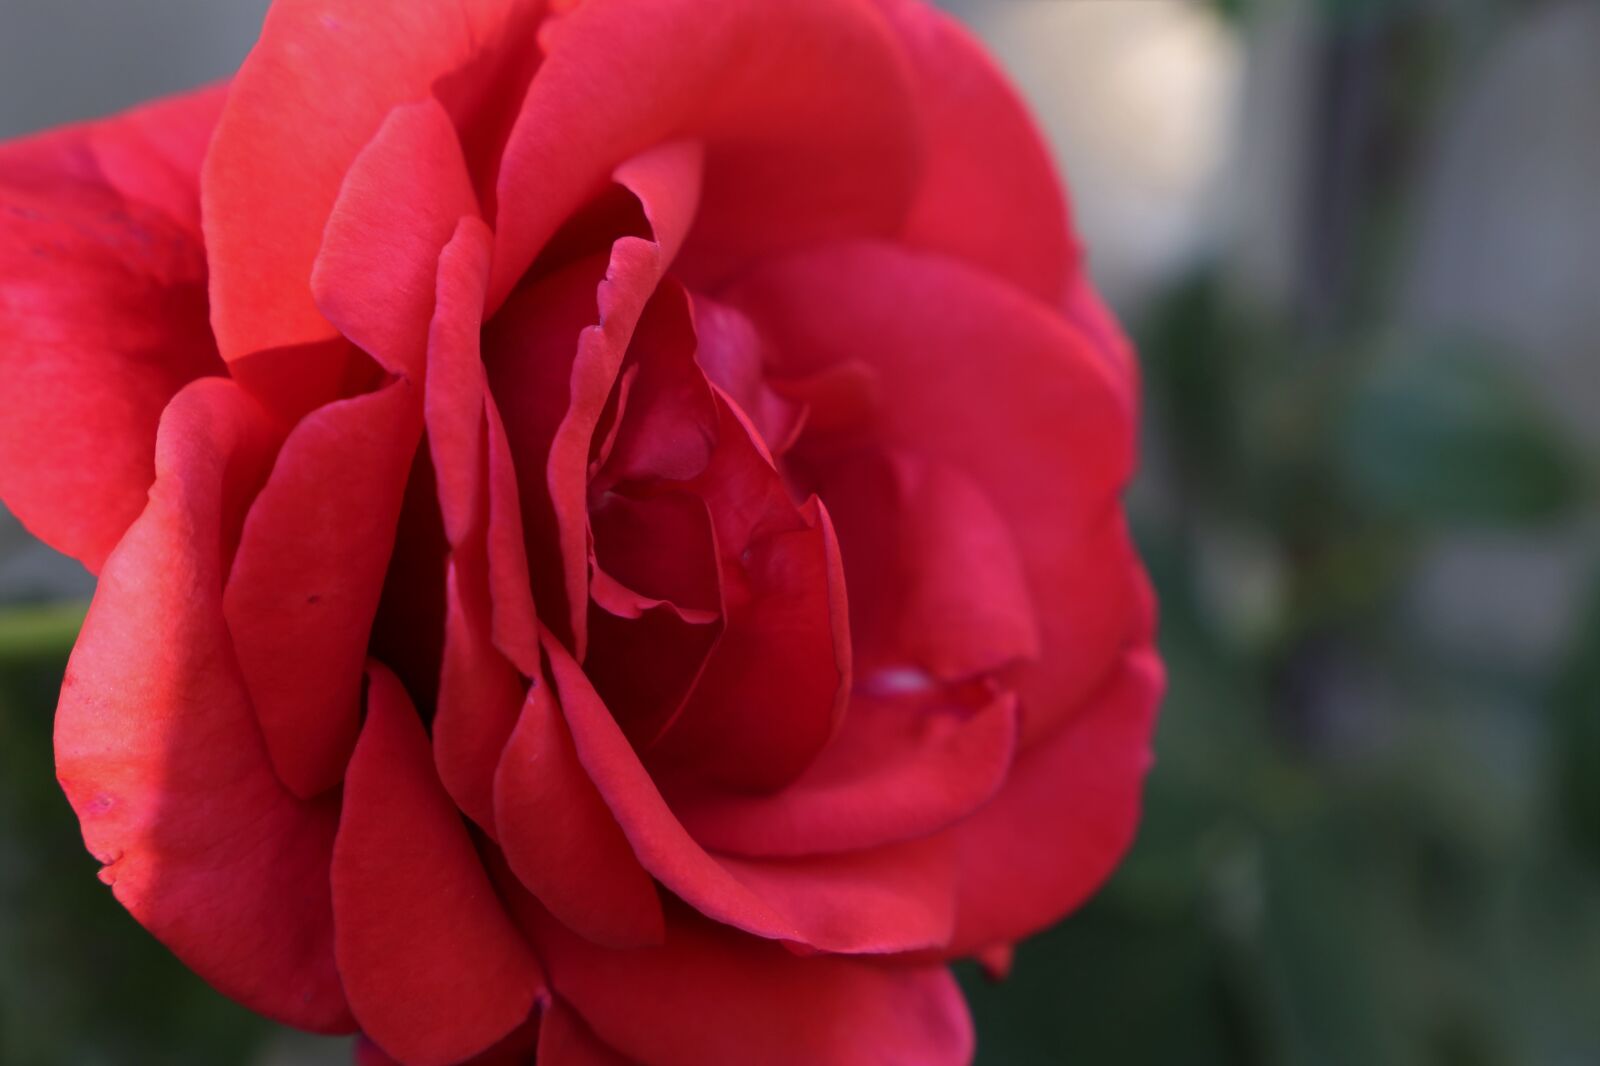 Canon EF 24-105mm F3.5-5.6 IS STM sample photo. Red rose velvet, flower photography